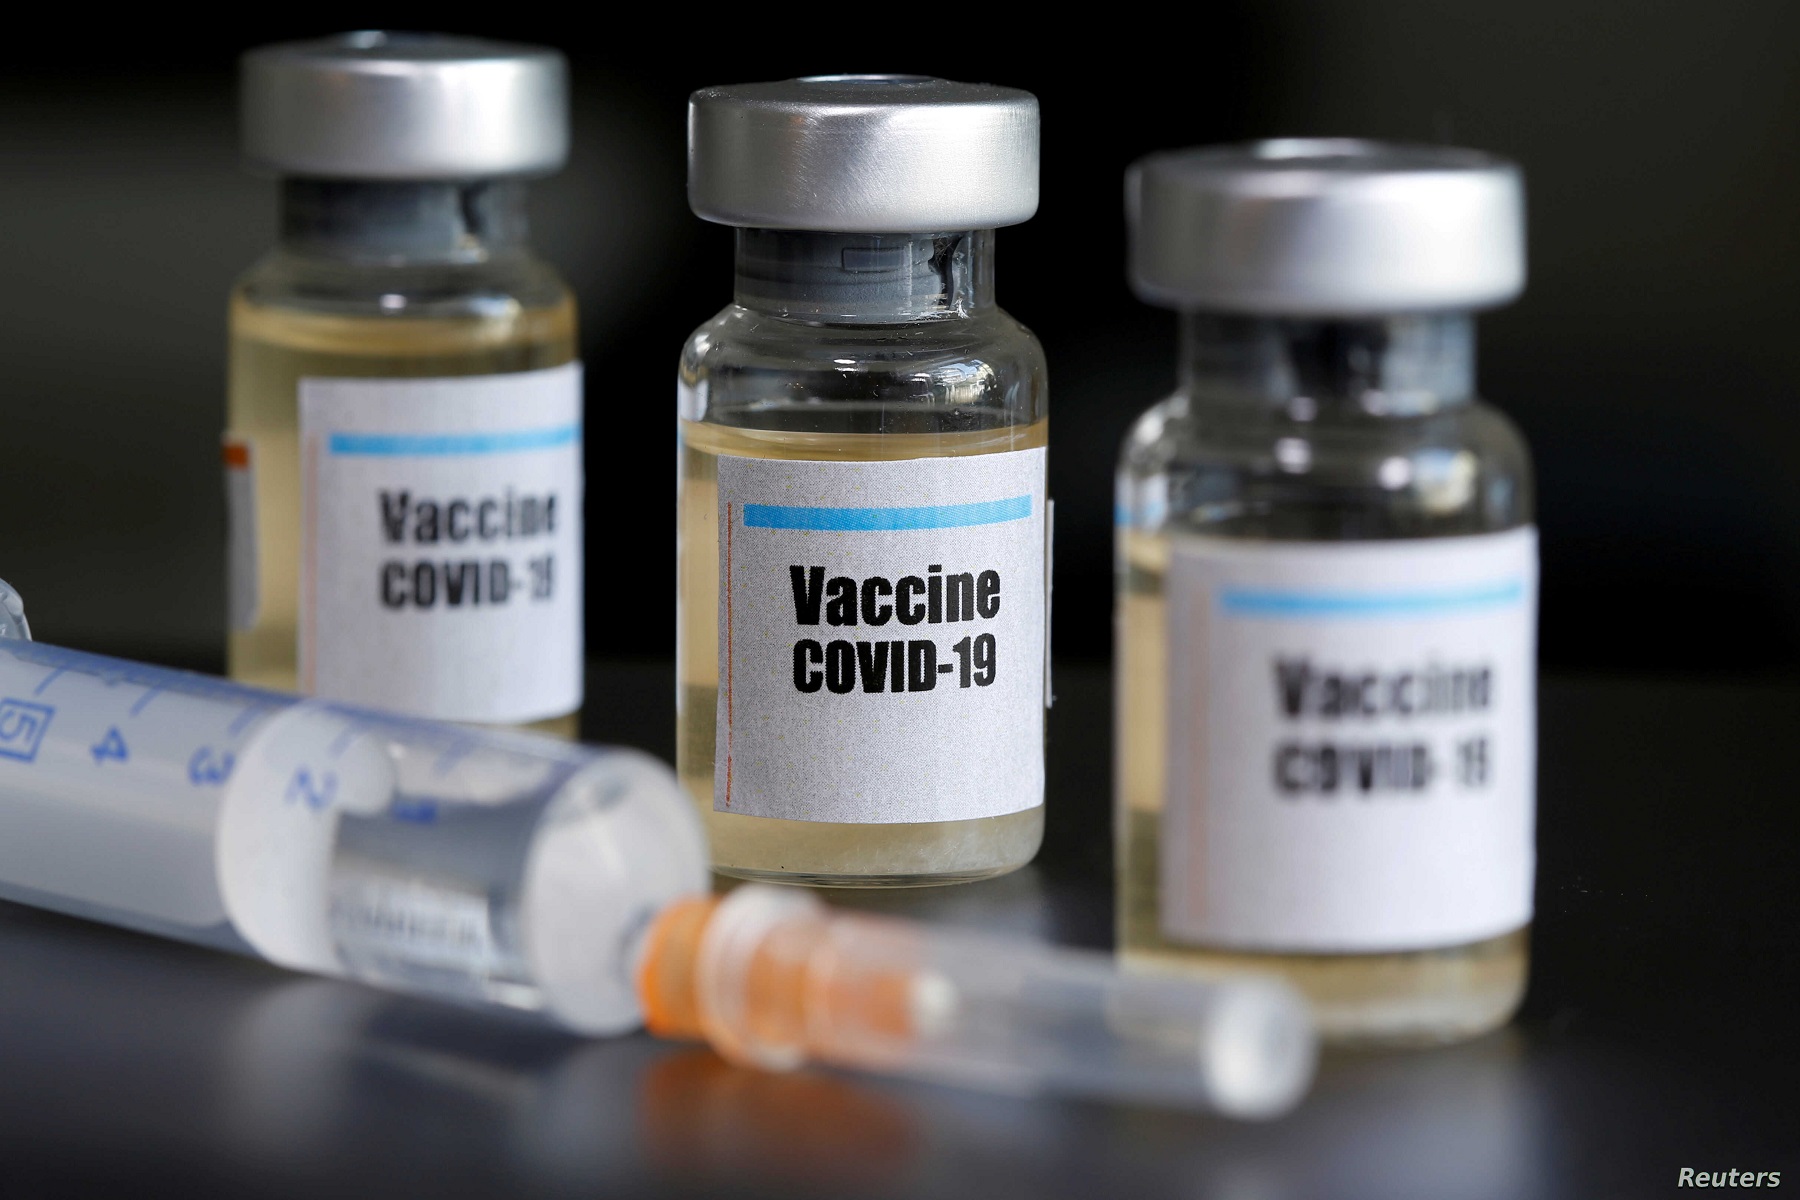 Εμβόλιο COVID-19: Μια δόση εισπνεόμενου ήταν επιτυχής σε μελέτη σε ζώα